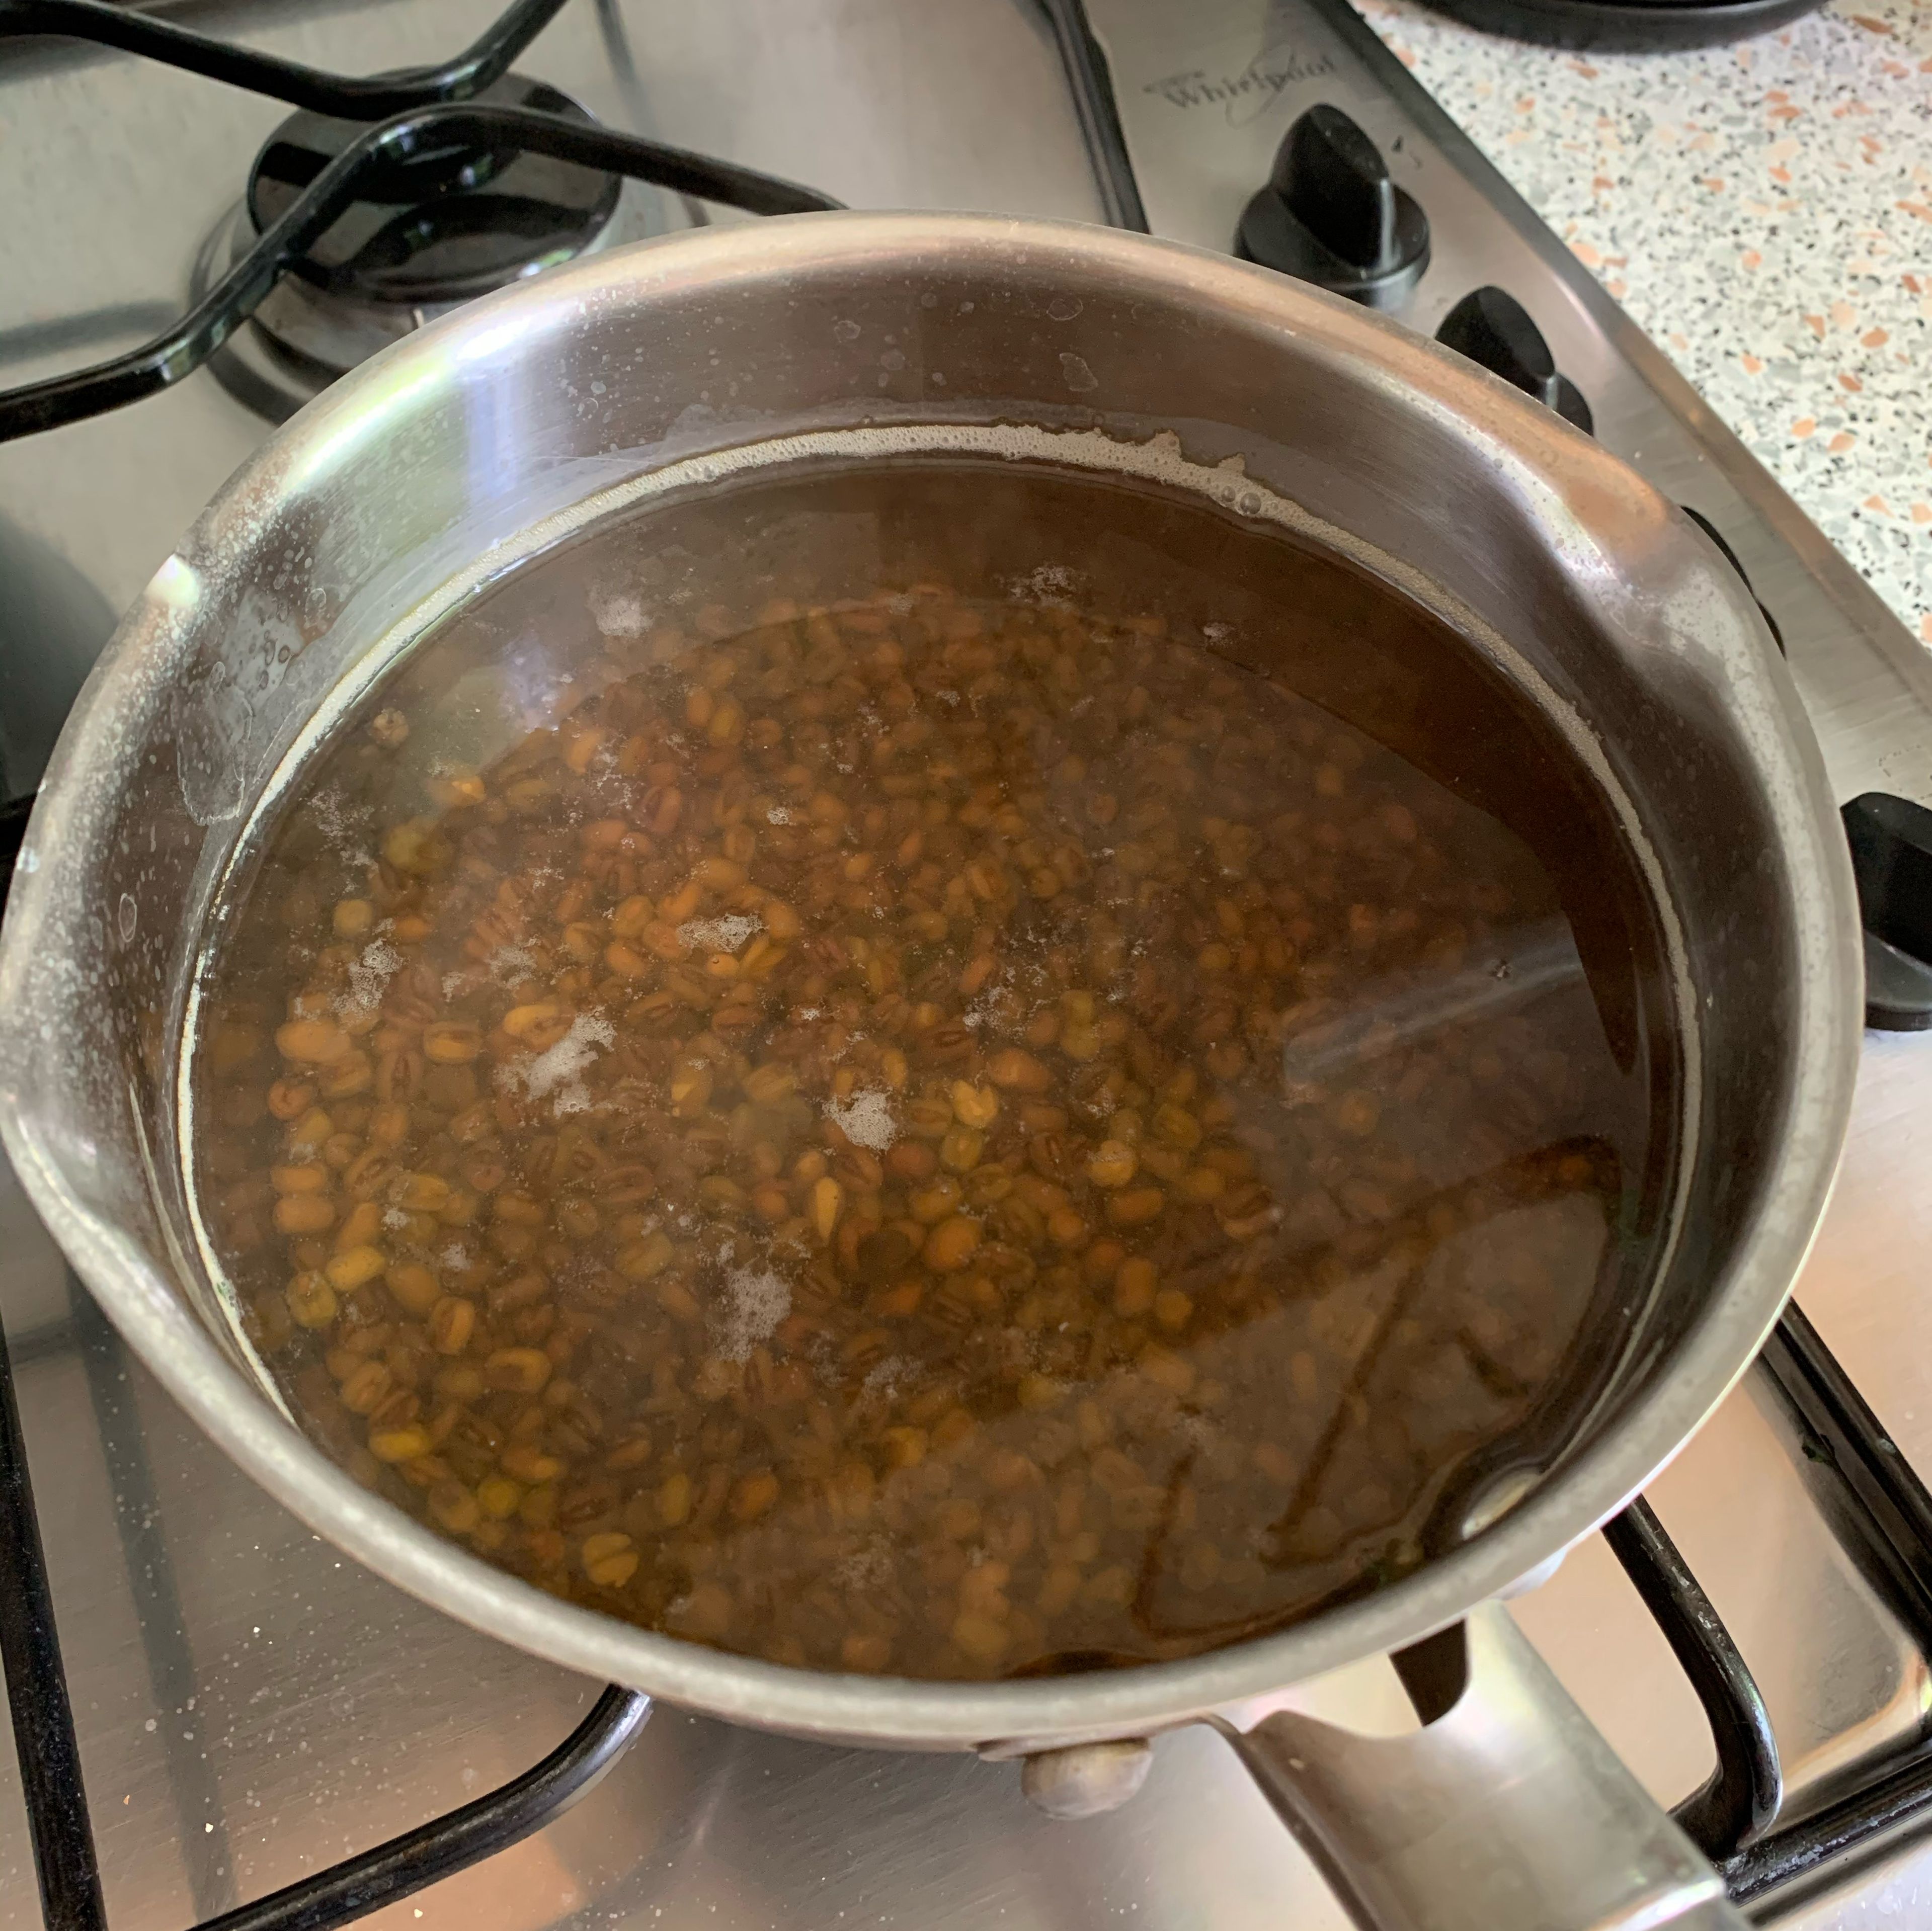 Boil beans for 30 min.